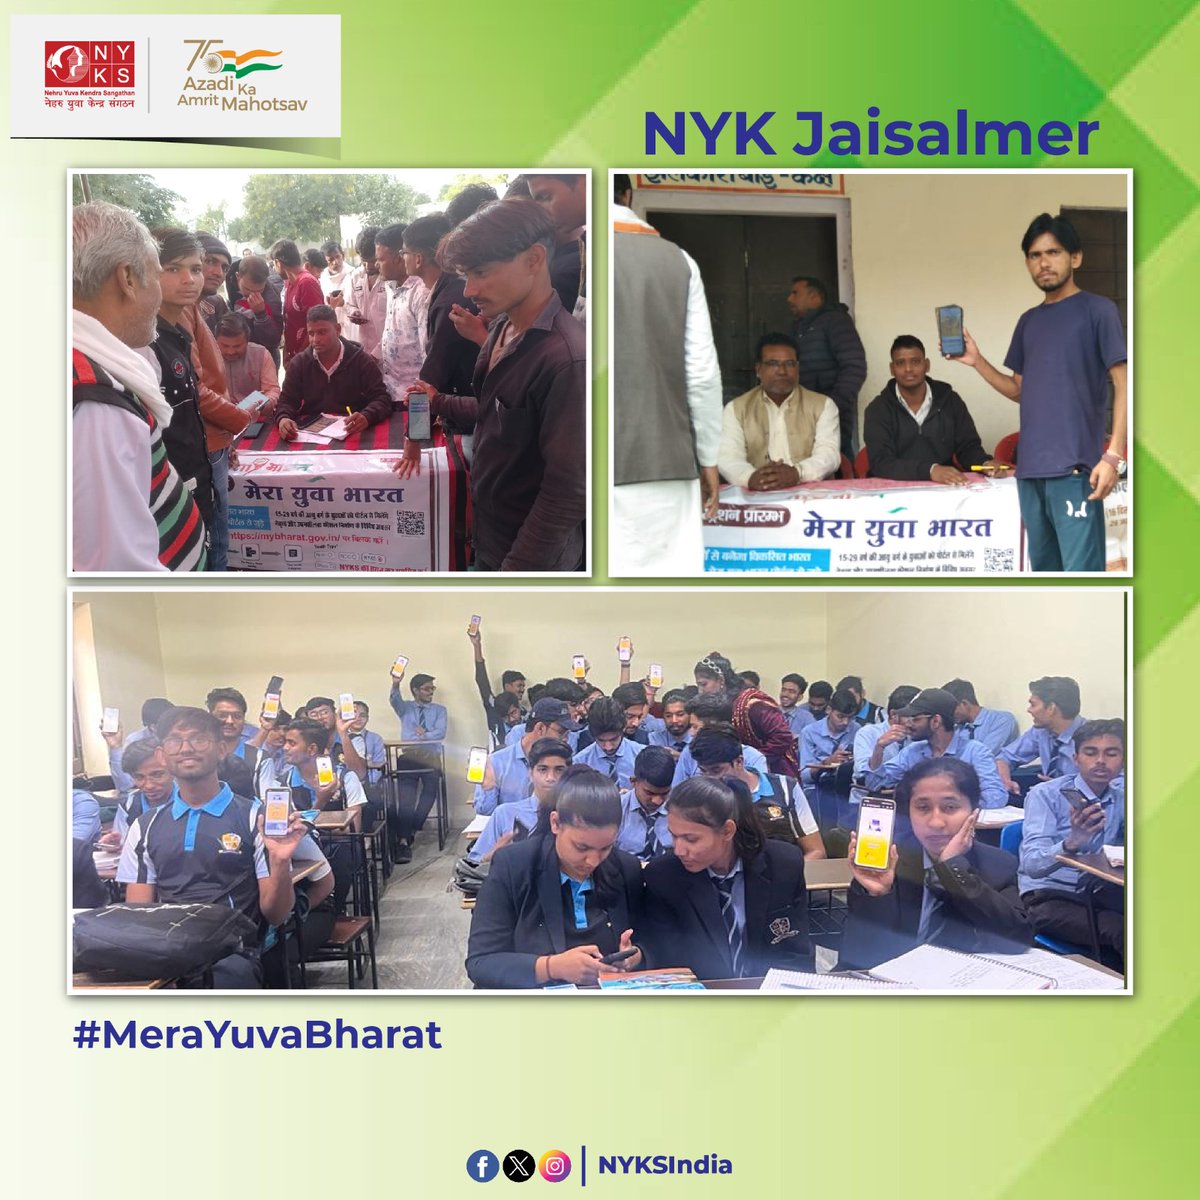 #ViksitBharatSankalpYatra कार्यक्रम के दौरान नेहरू युवा केंद्र जैसलमेर(@YuvaJaisalmer) के युवा स्वयंसेवकों द्वारा #MYBharat पोर्टल पर युवाओं का रजिस्ट्रेशन कार्य किया जा रहा है एवं उन्हें पोर्टल के बारे में महत्त्वपूर्ण जानकारियां दी जा रही हैं। @NyksRajasthan @mybharatgov